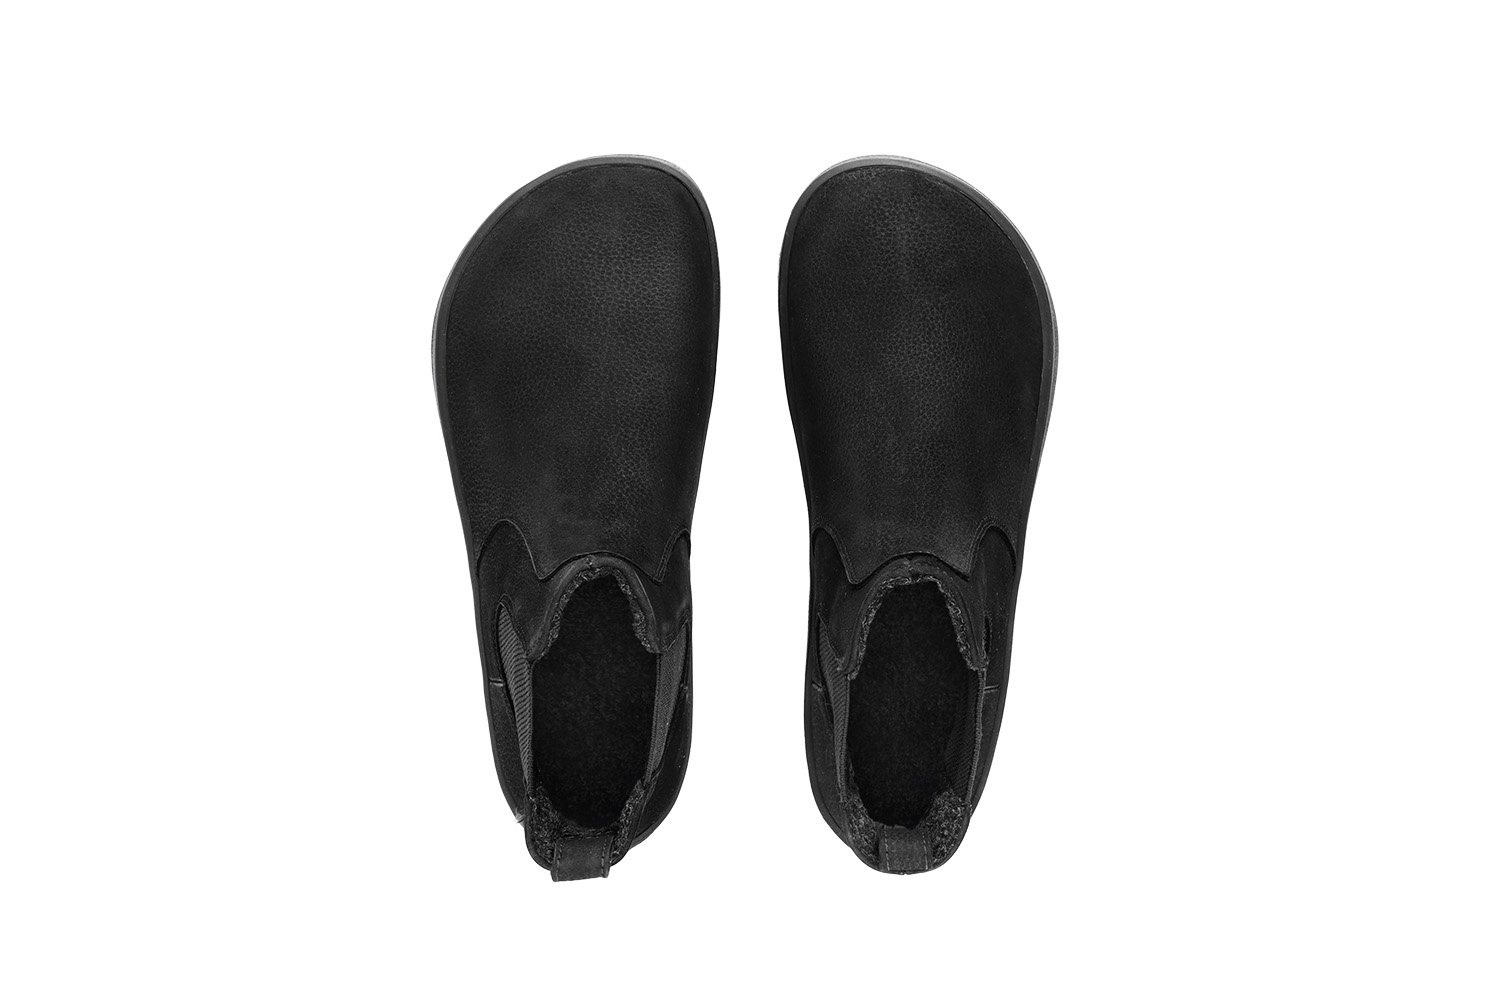 Barefoot Boots Be Lenka Entice Neo - Matt Black | Be Lenka